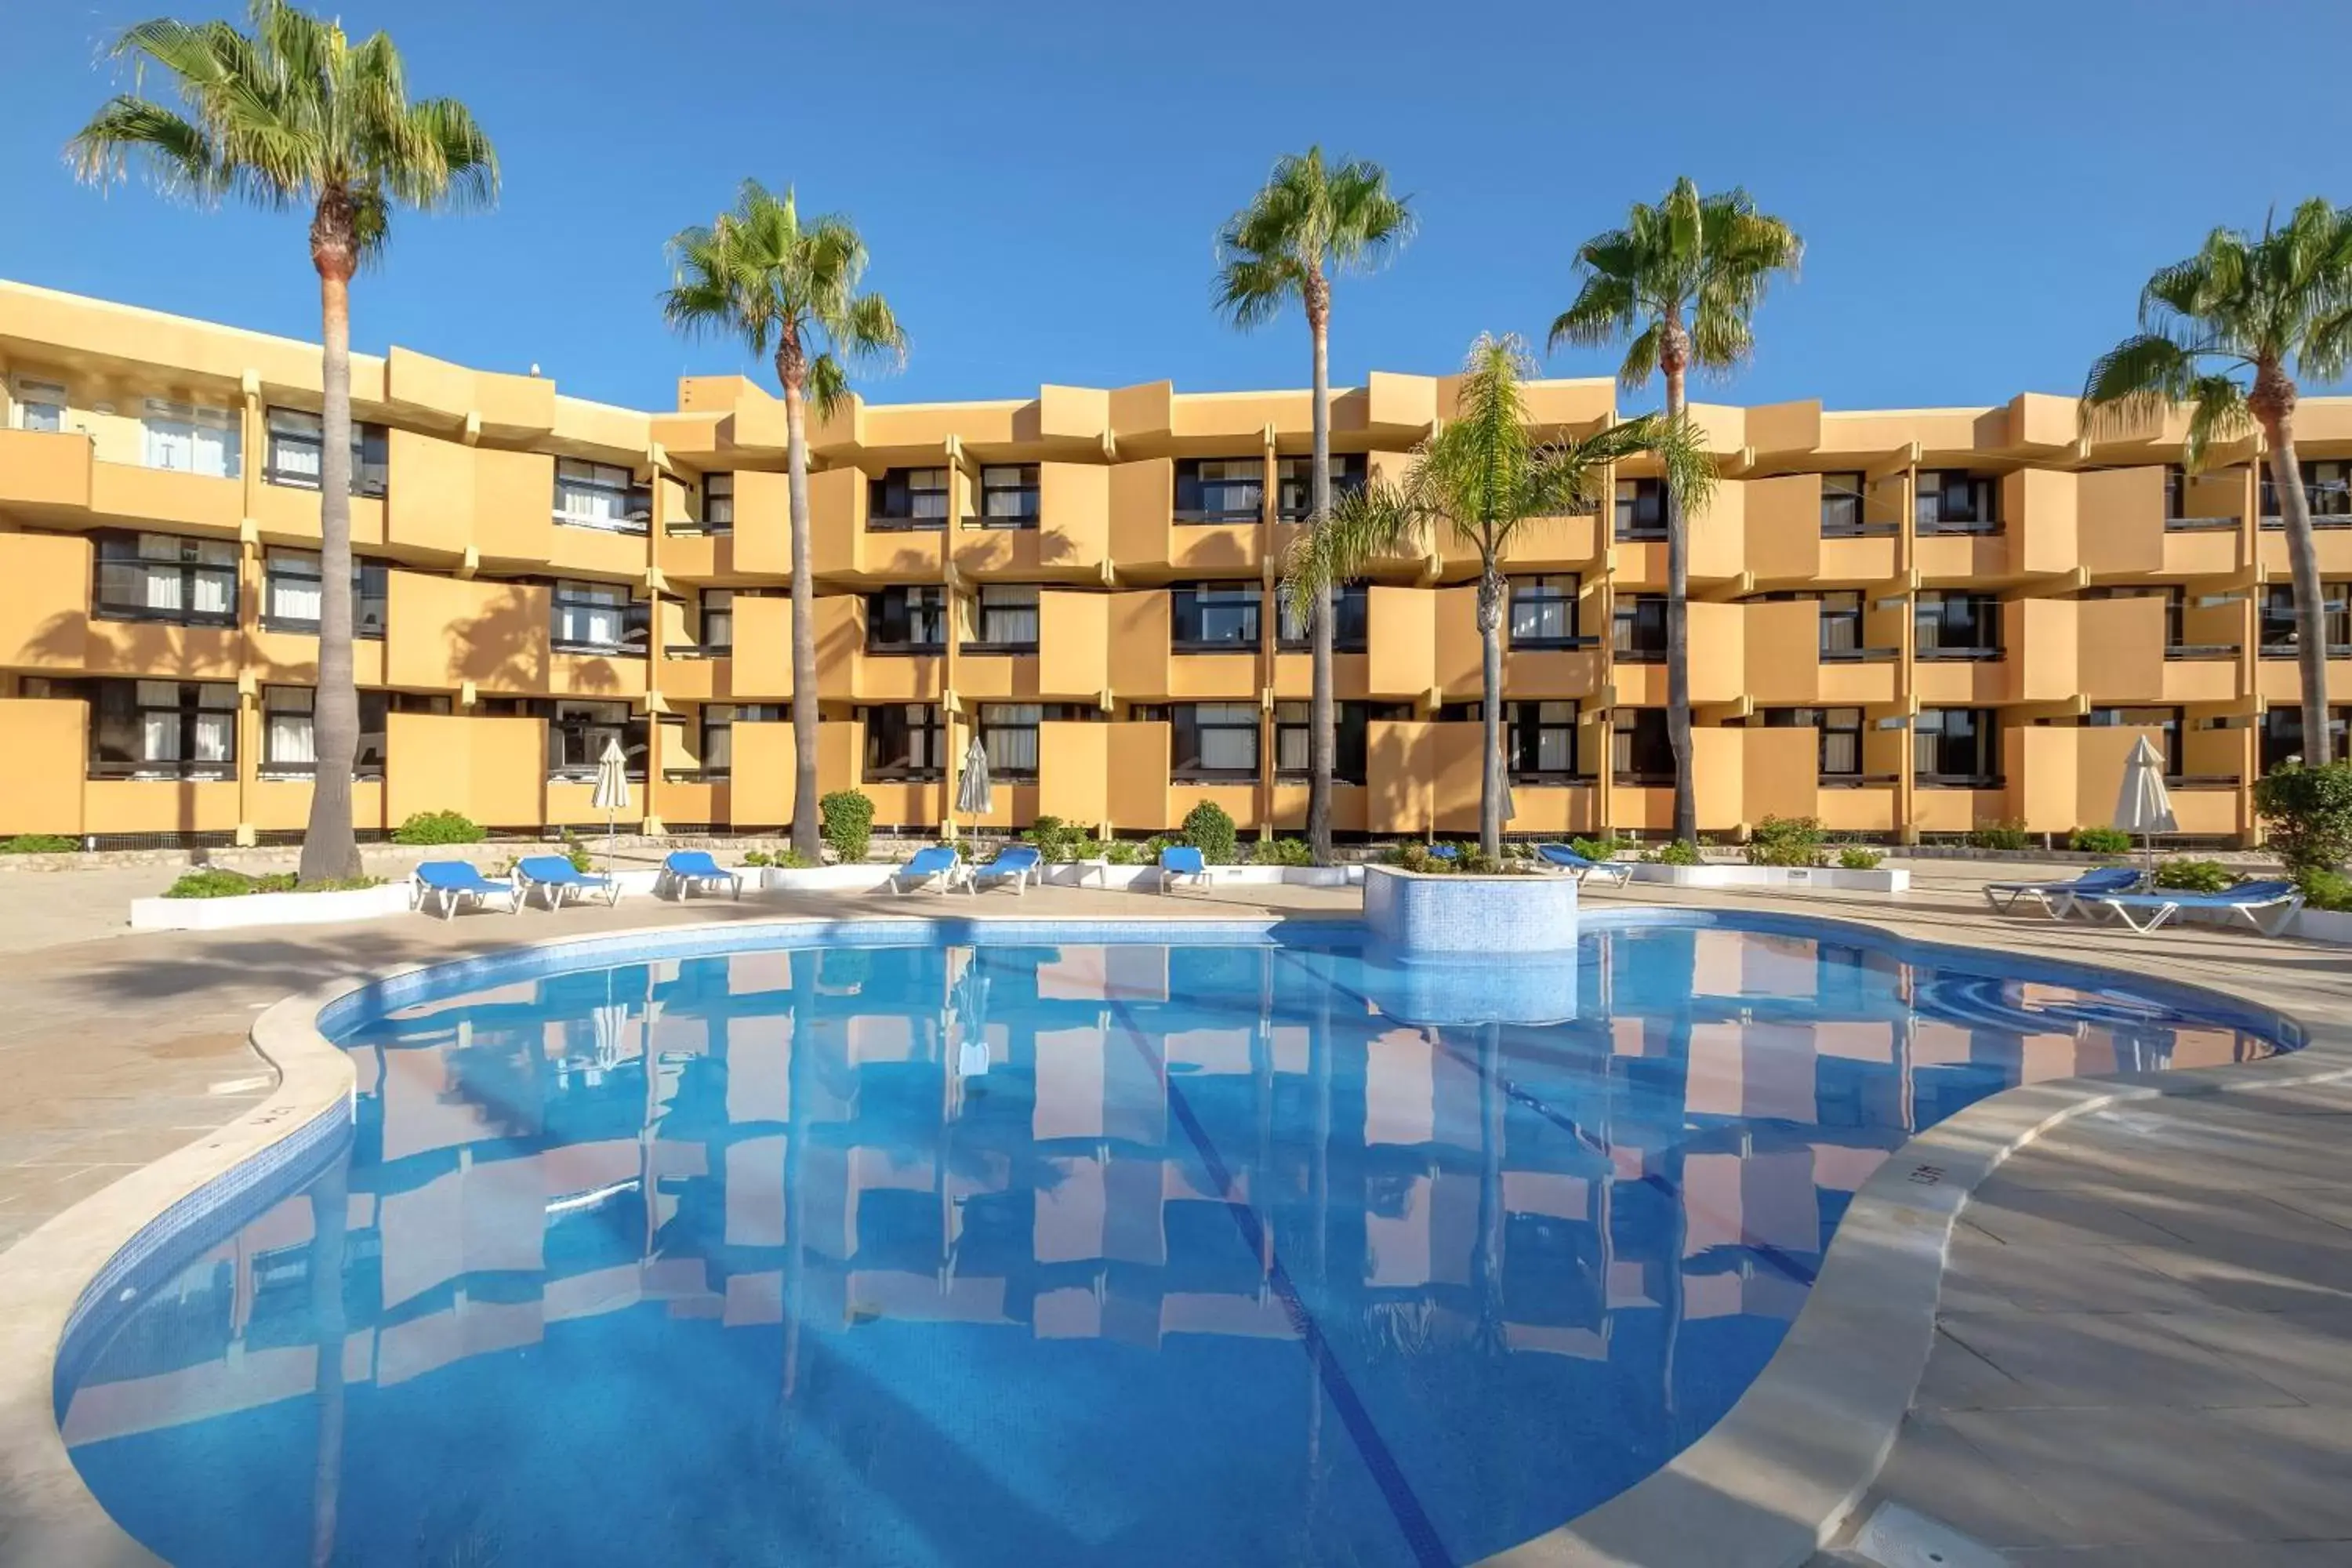 Property building, Swimming Pool in Auramar Beach Resort